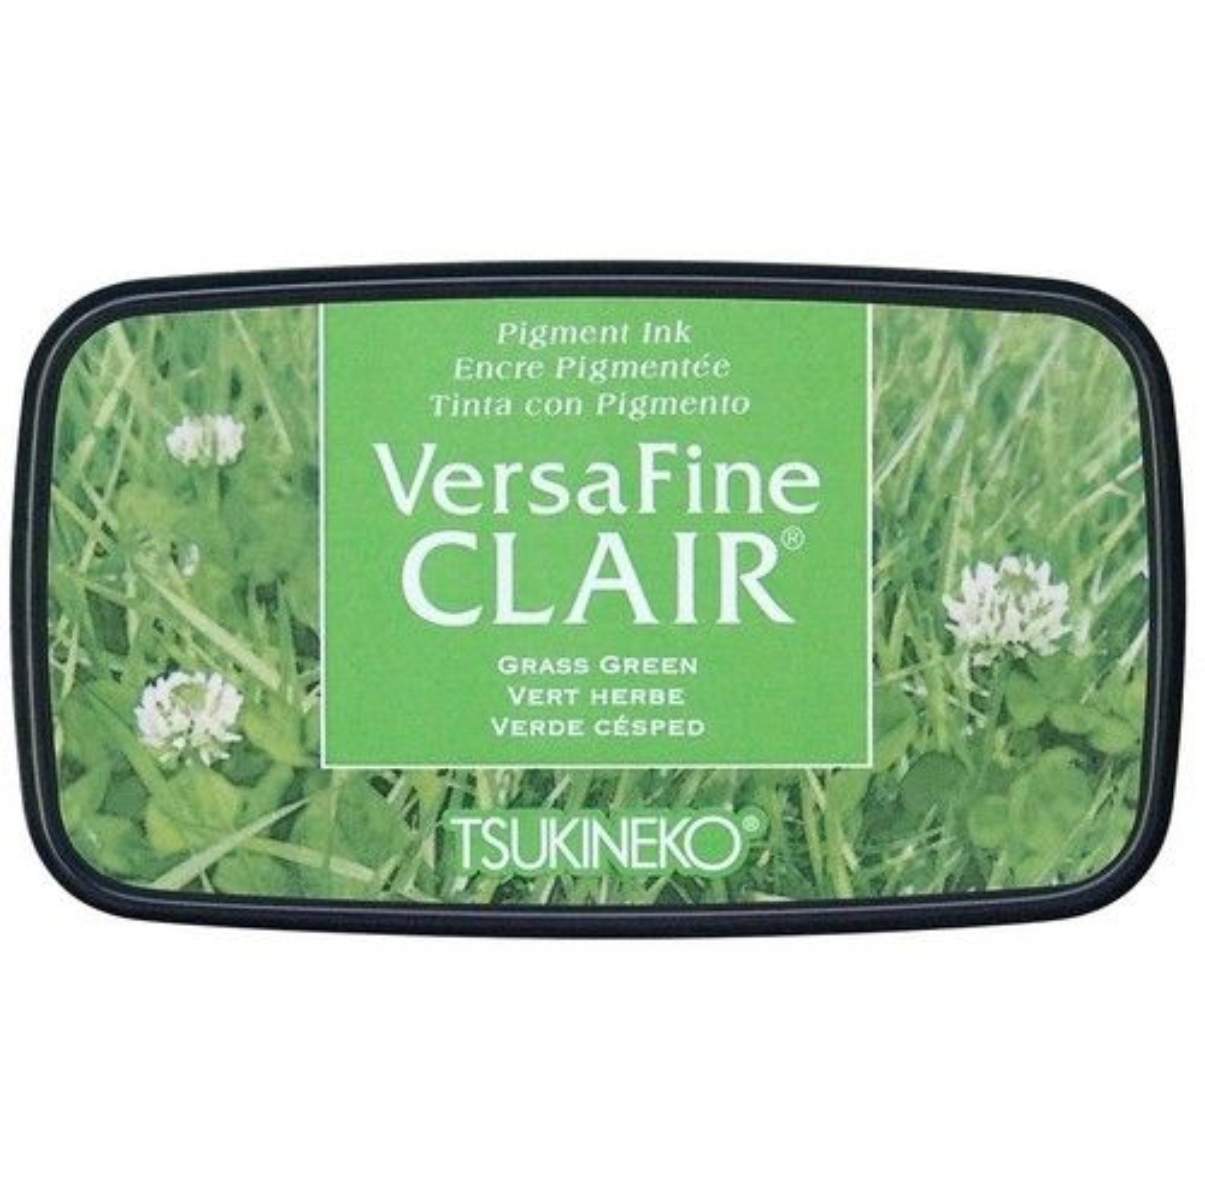 VersaFine Clair – Grass Green